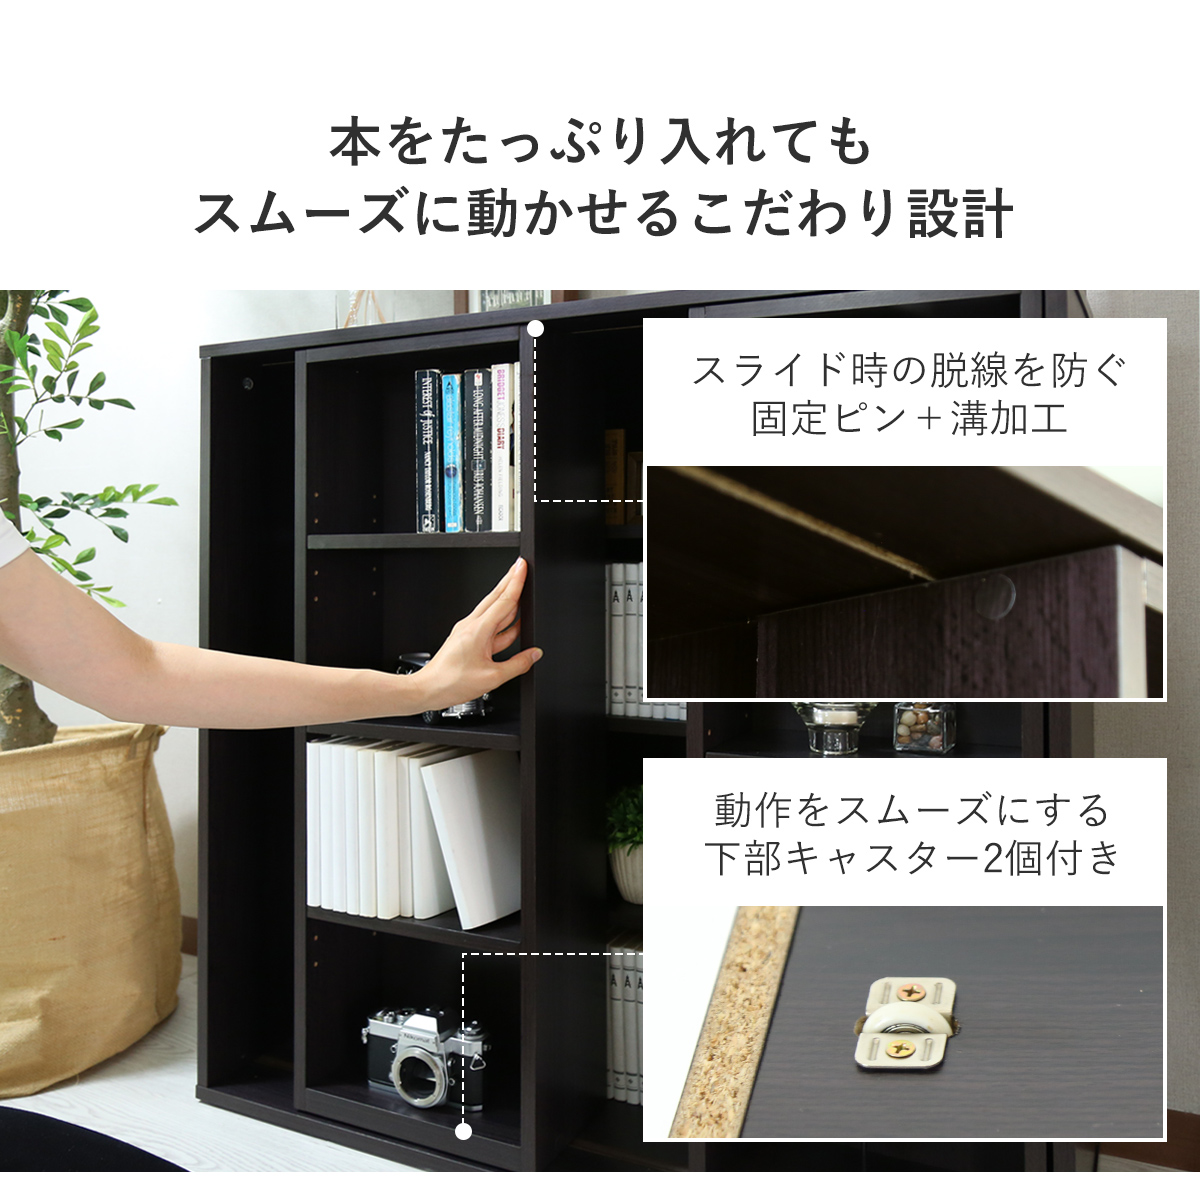 【楽天市場】本棚 スライド書棚 ダブル 幅89cm スライド式本棚 木製 